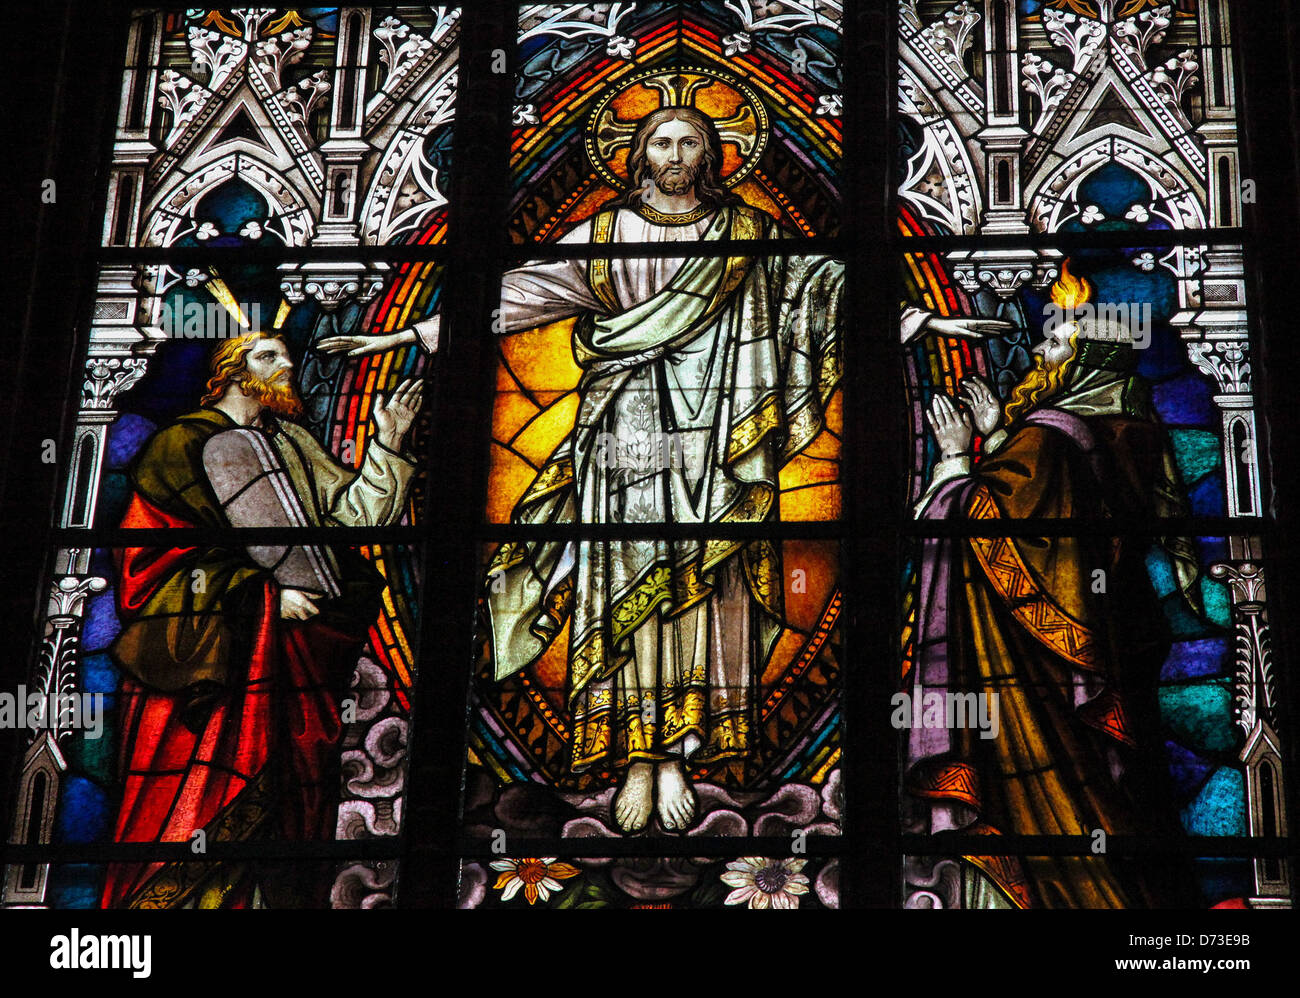 Vidriera representando a Jesucristo, Moisés con los Diez Mandamientos y el Profeta Iesaiah. Foto de stock